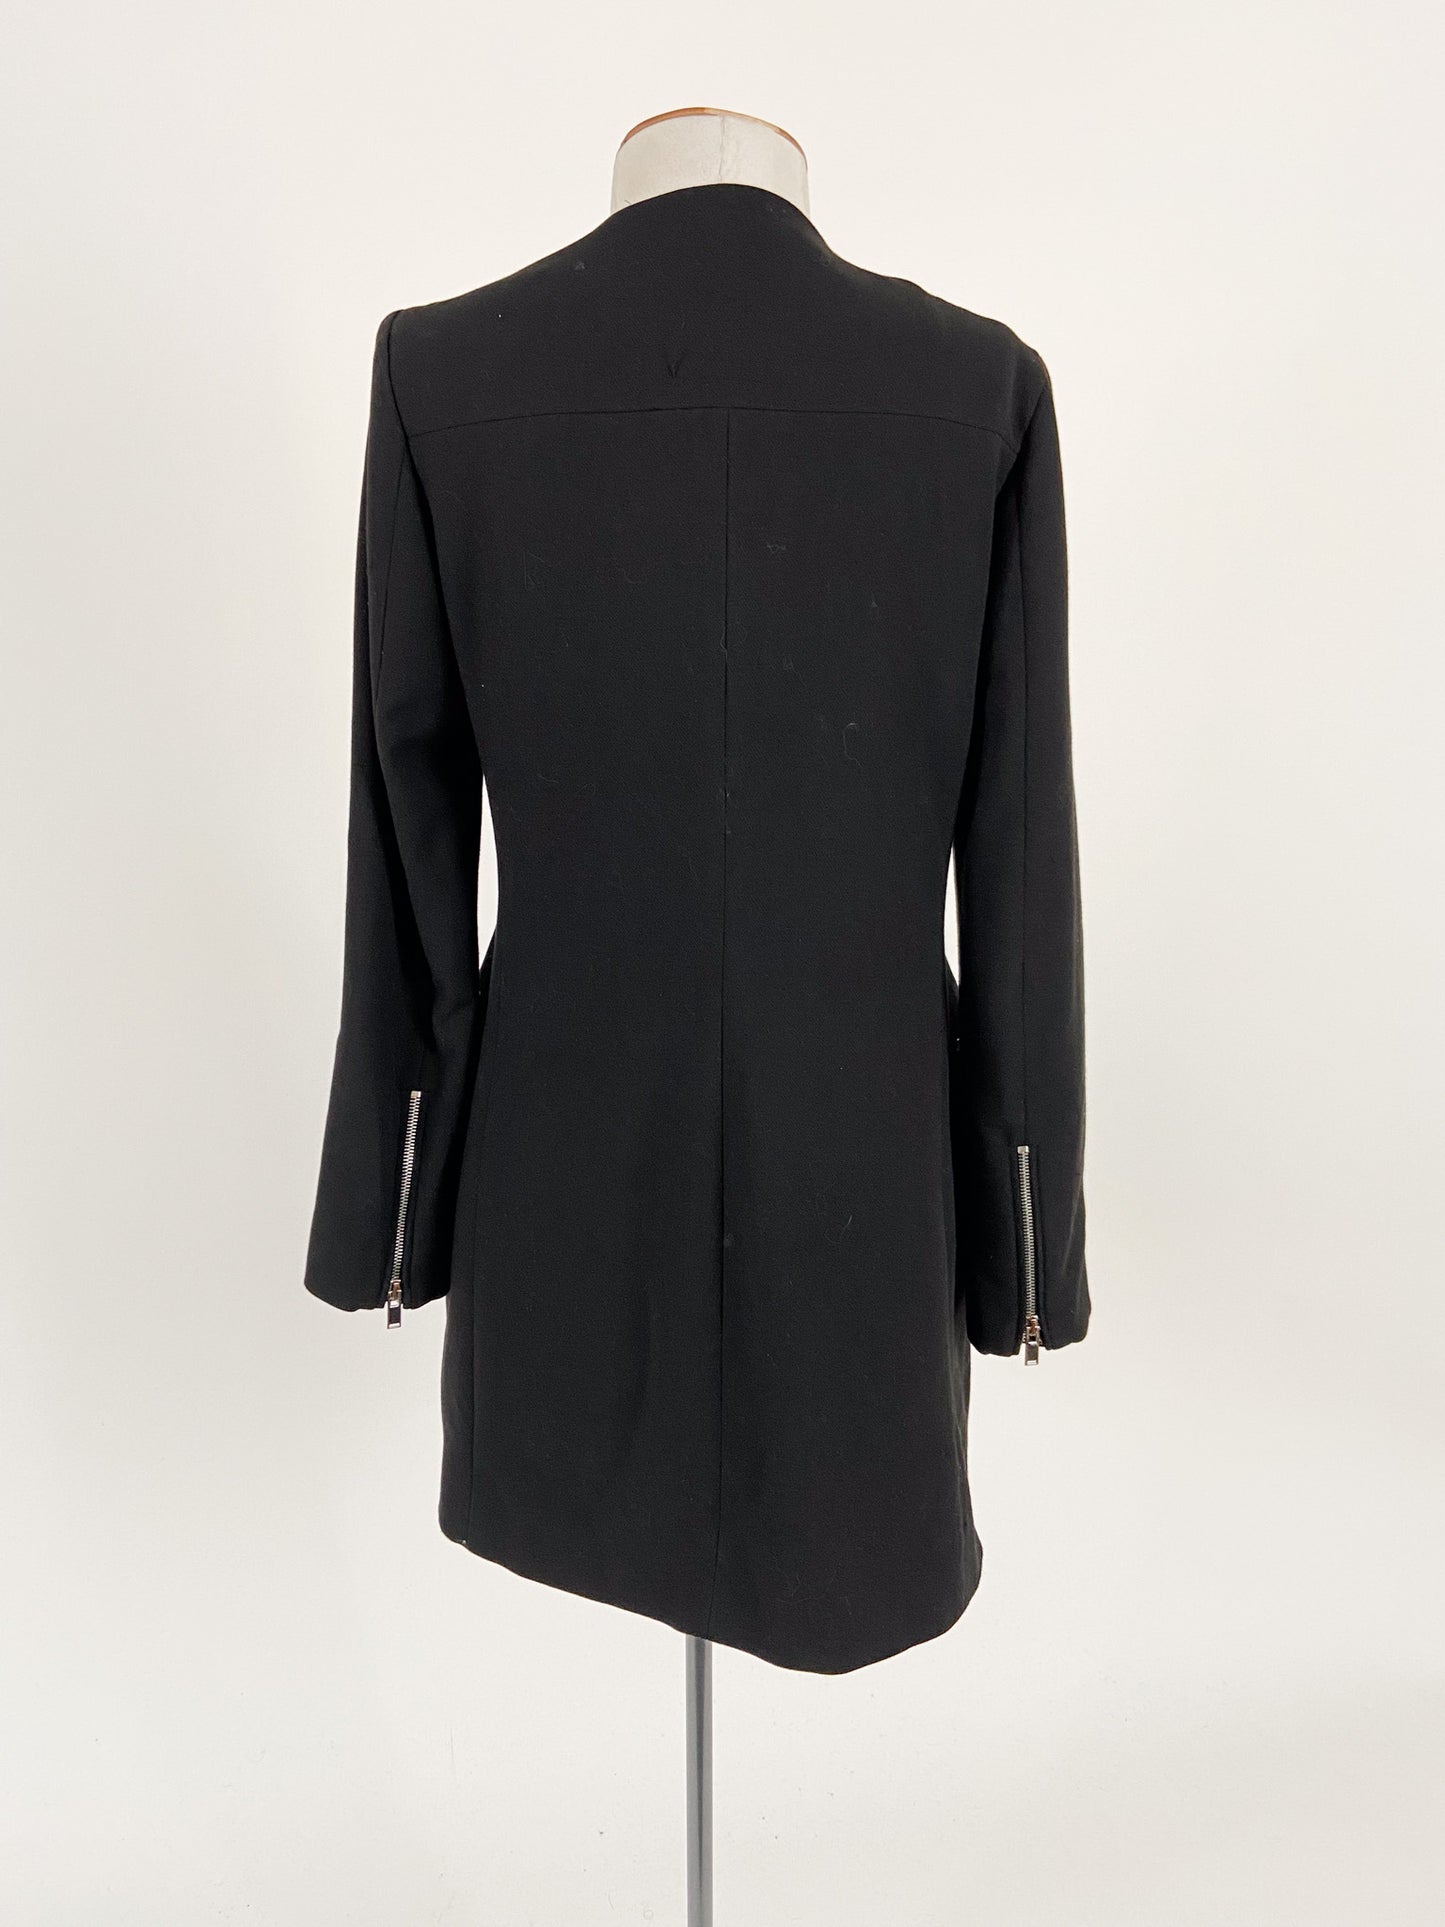 Zara | Black Workwear Jacket | Size XS